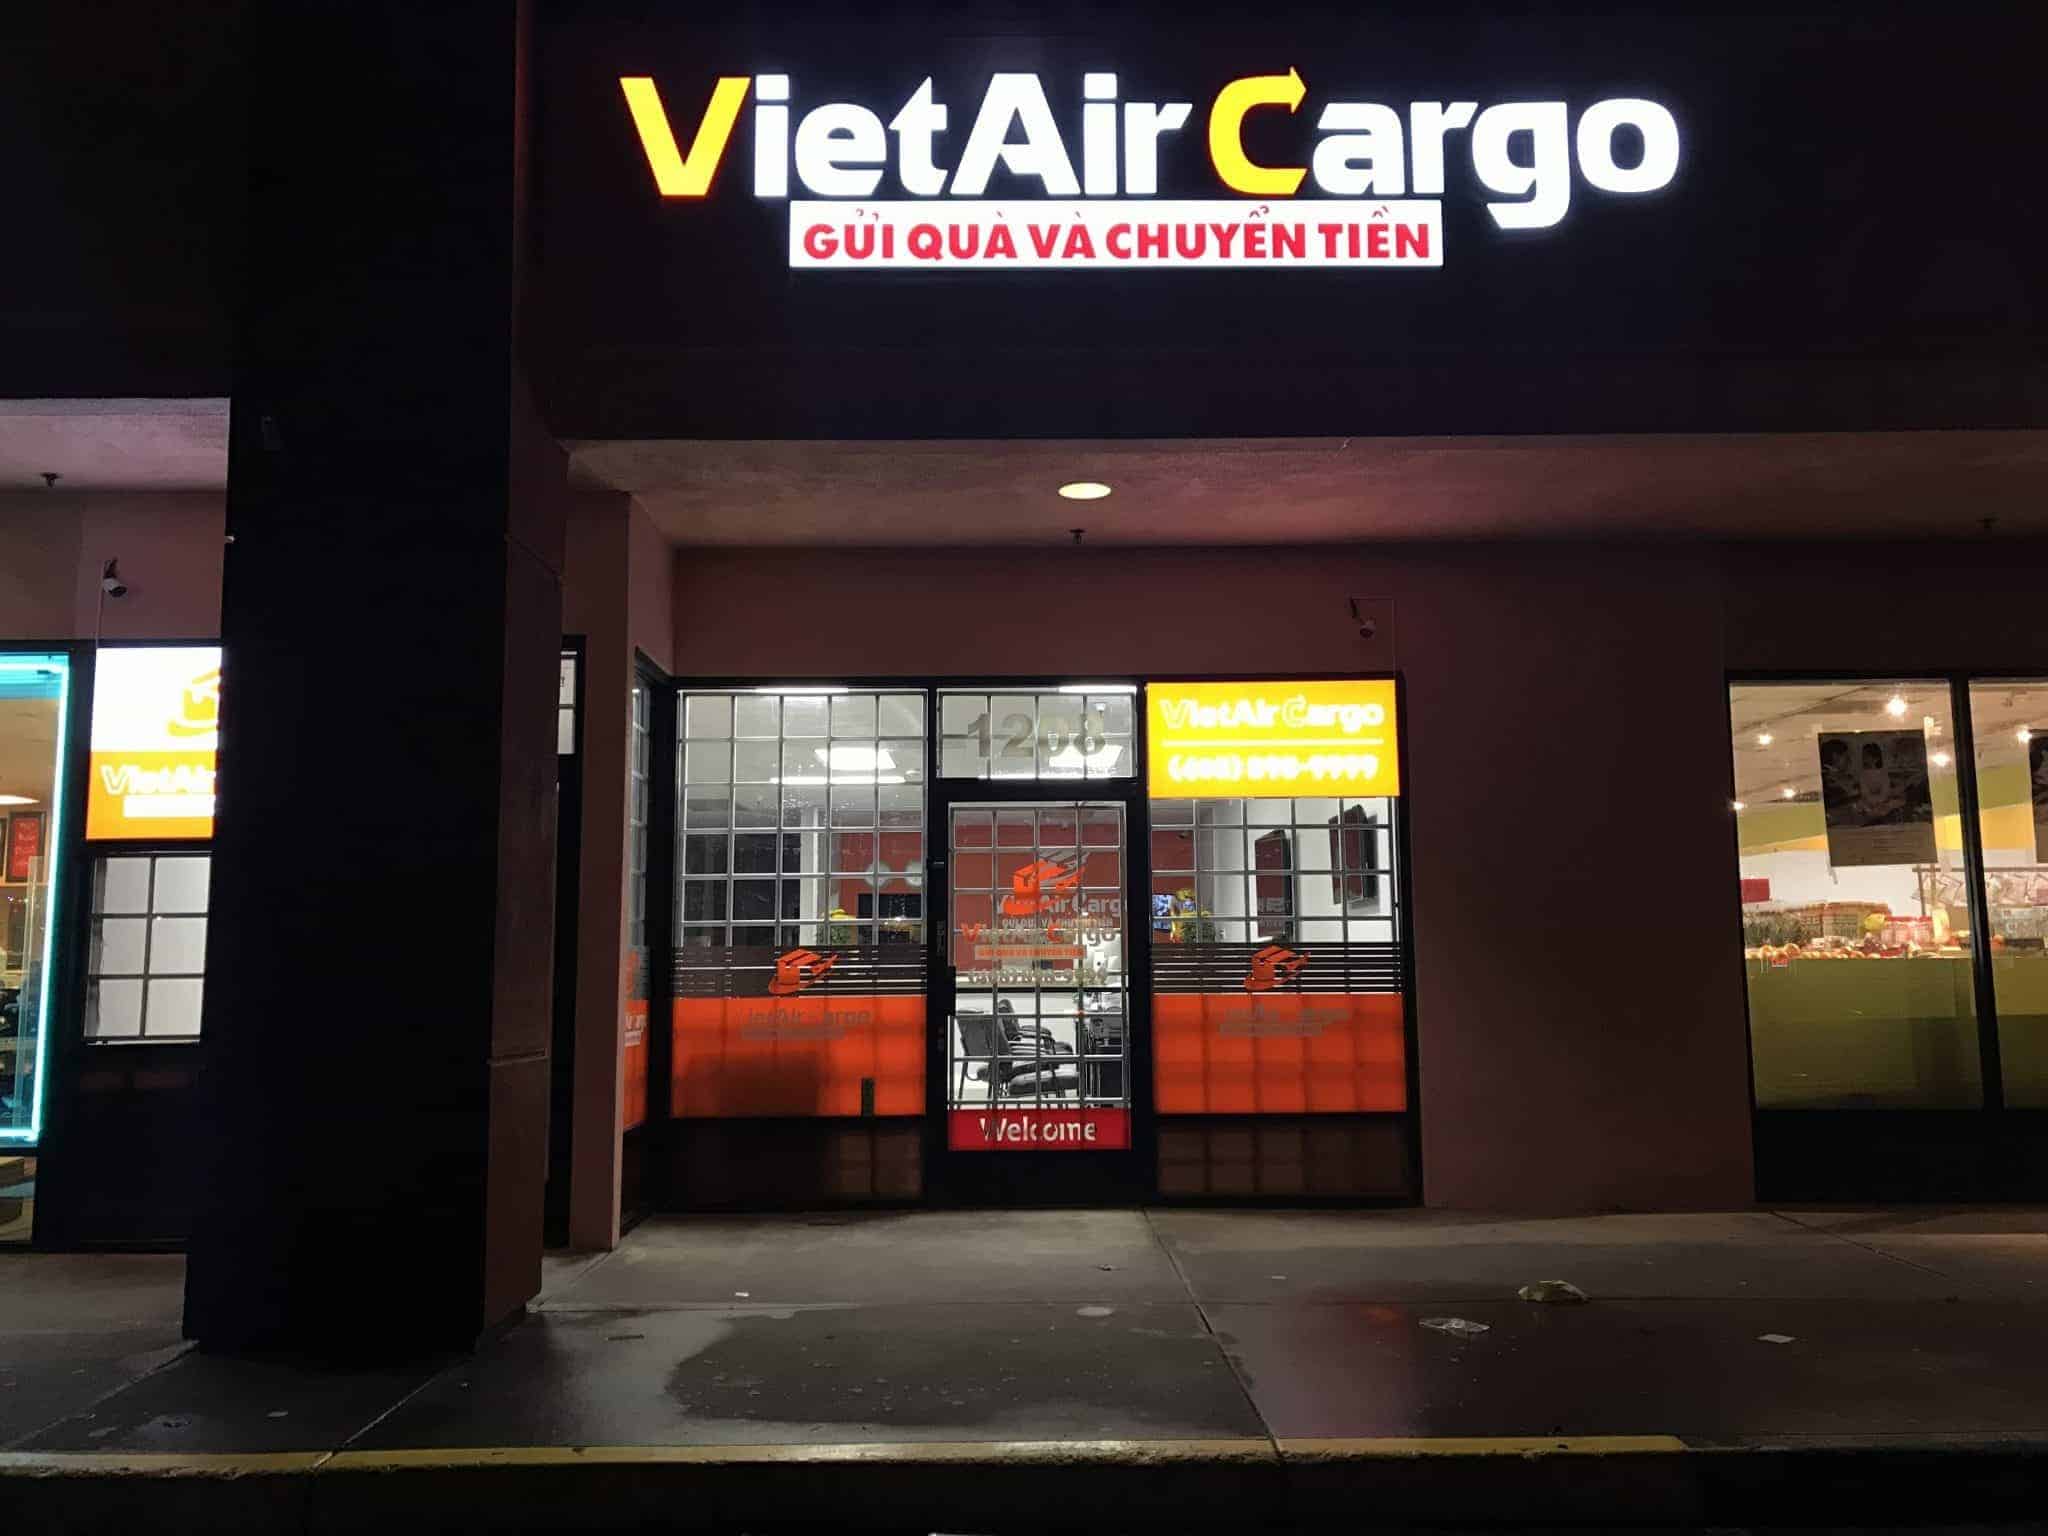 ng-dụng-VietAir-Cargo-V247-ứng-dụng-tiện-lợi-dùng-để-gọi-điện-nước-ngoài-từ-Mỹ-về-Việt-Nam Ứng dụng VietAir Cargo V247 - ứng dụng tiện lợi dùng để gọi điện nước ngoài từ Mỹ về Việt Nam